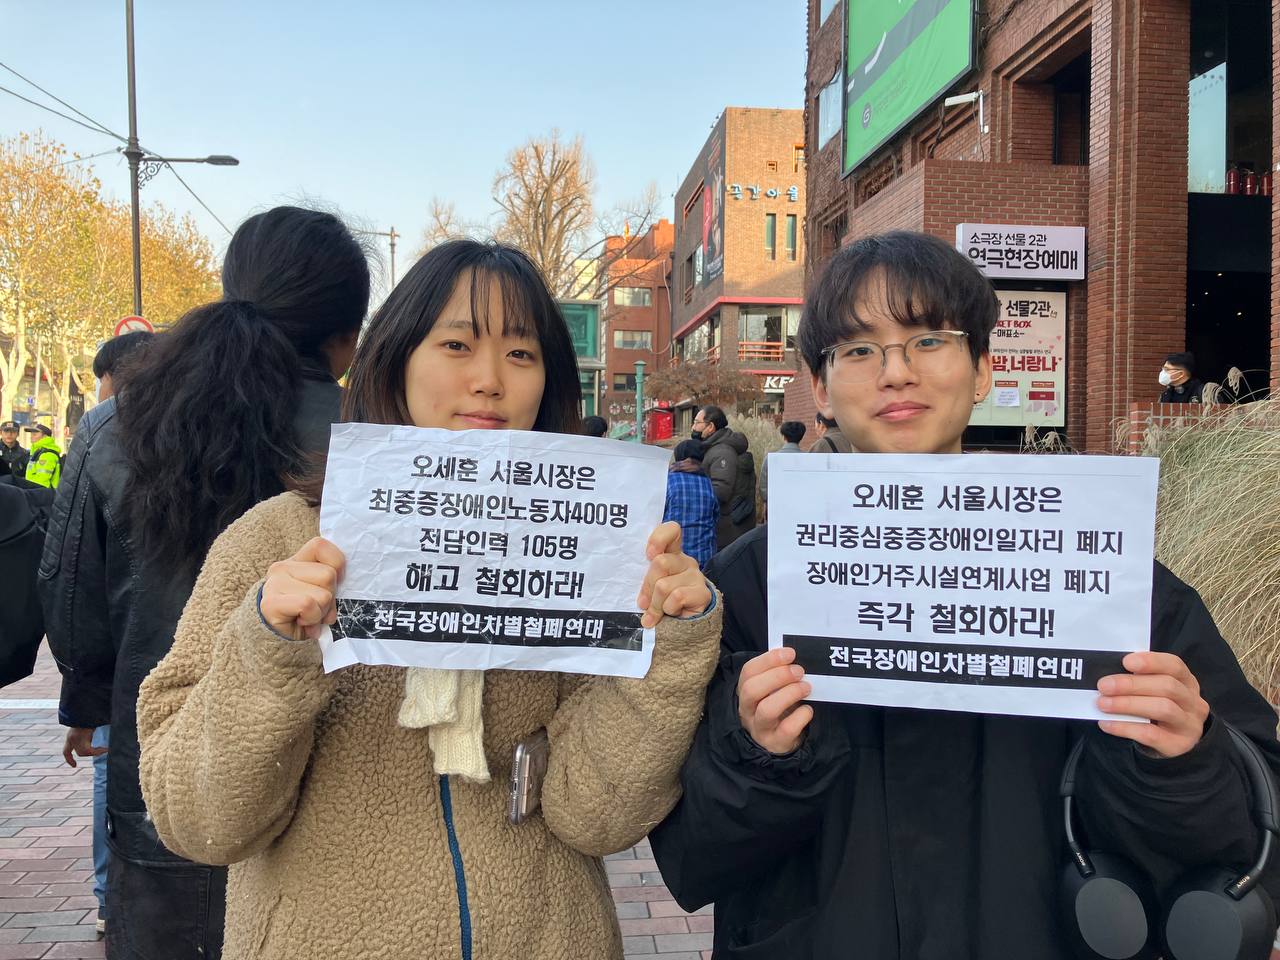 사진2. 서울인권영화제의 고운, 두부가 서울시의 차별 행정을 규탄하는 피켓을 각각 들고 있다.